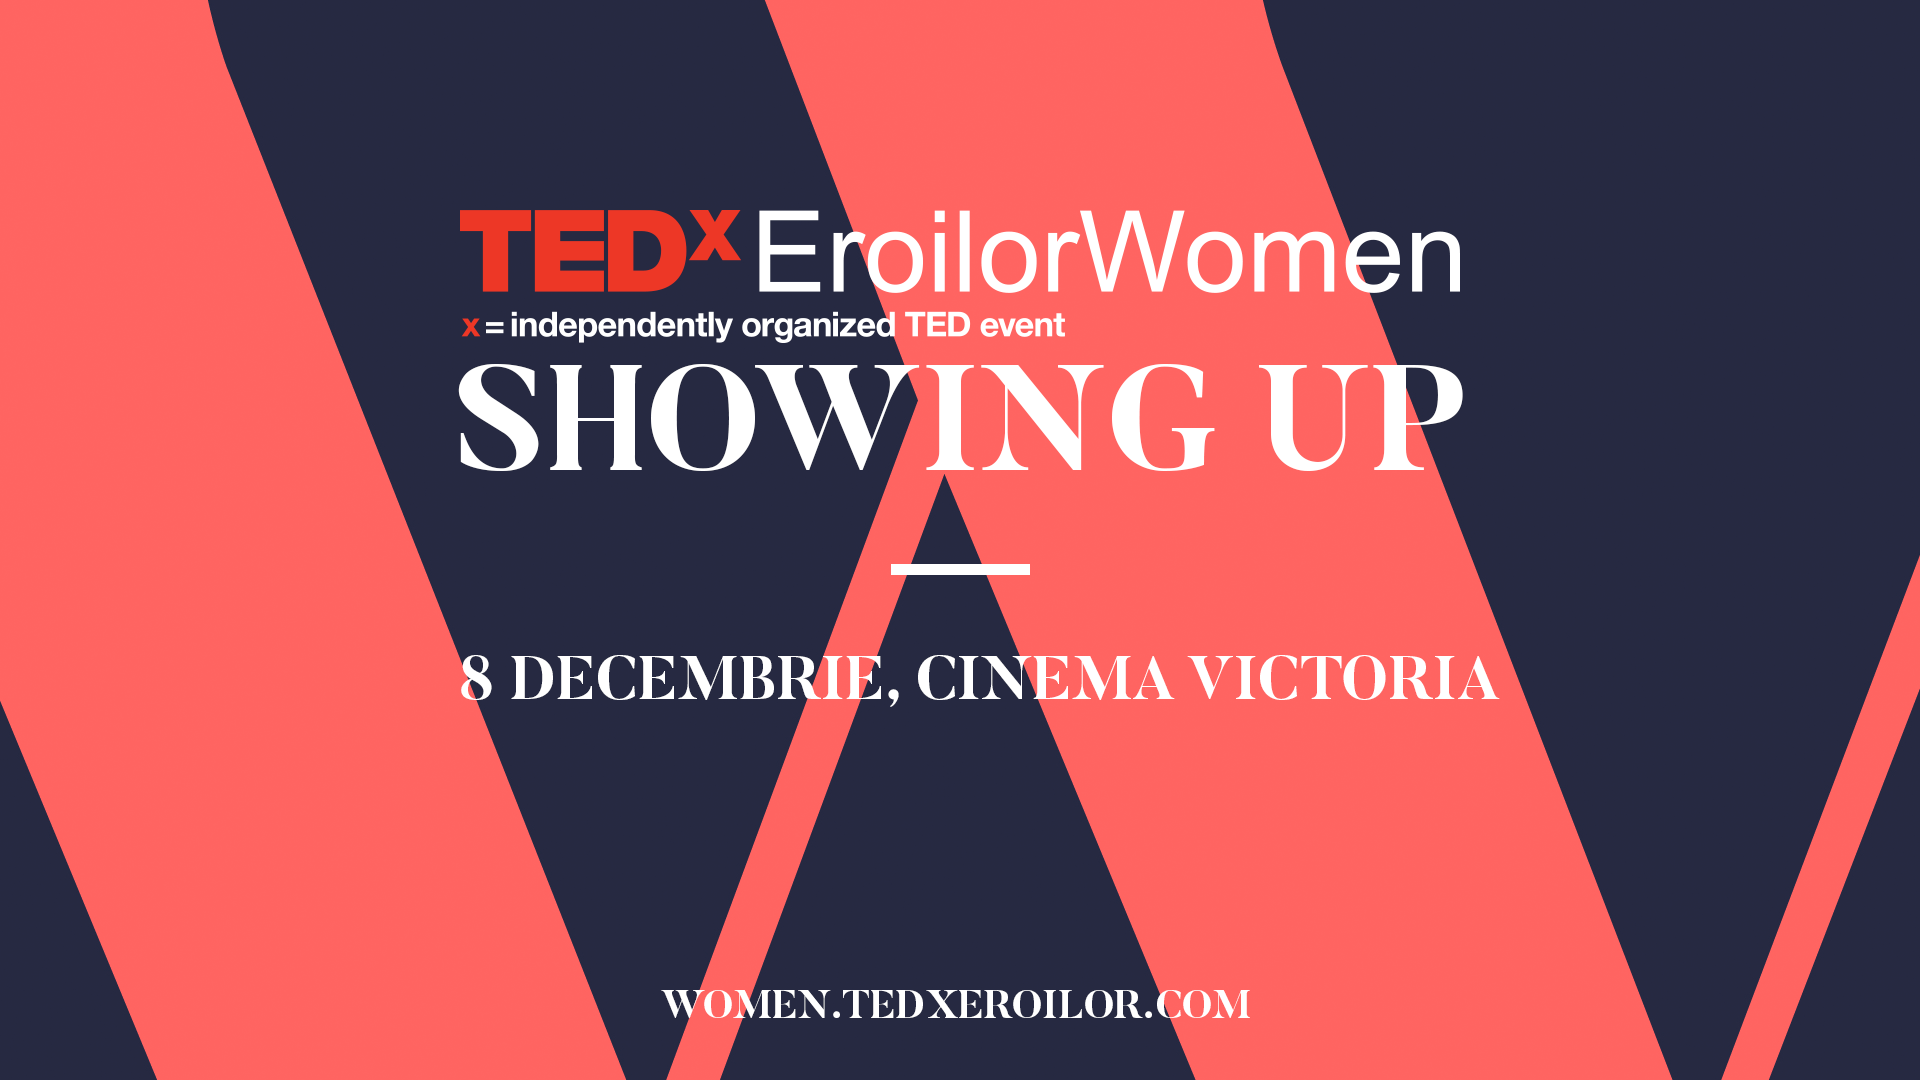 Pe 8 decembrie TEDxEroilorWomen sărbătorește puterea femeilor de a produce schimbarea